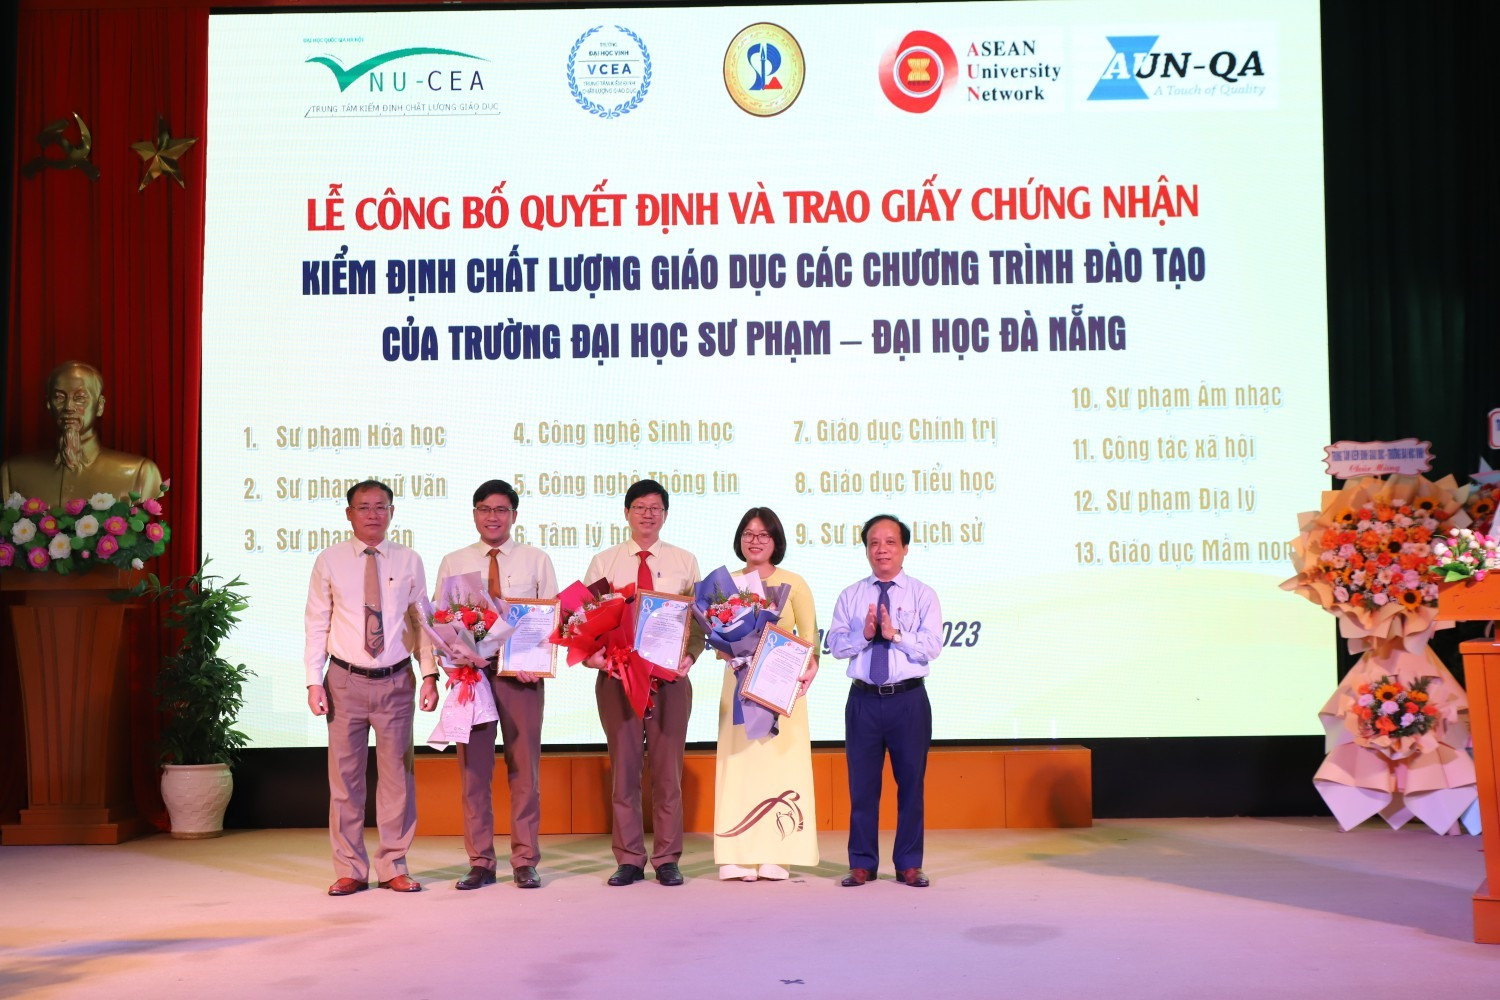 Giám đốc ĐHĐN Nguyễn Ngọc Vũ (bên phải) và Hiệu trưởng Nhà trường Lưu Trang (bên trái) tặng hao chúc mừng các khoa có 3 chương trình đạt chuẩn quốc tế AUN -QA. Ảnh Nhà trường cung cấp.